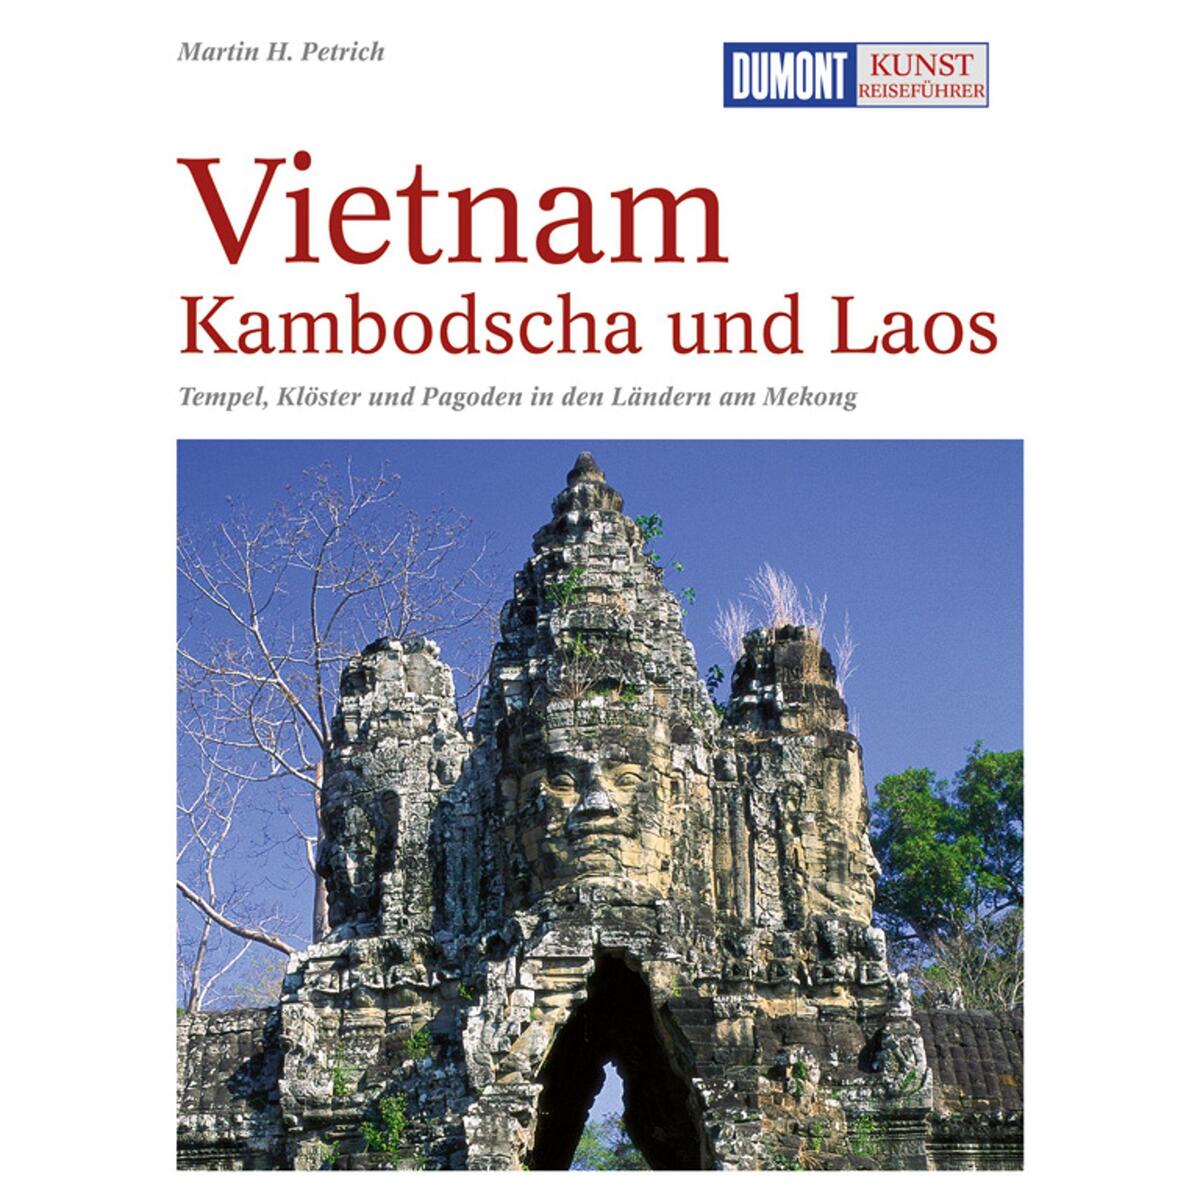 DuMont Kunst-Reiseführer Vietnam, Kambodscha und Laos von Dumont Reise Vlg GmbH + C